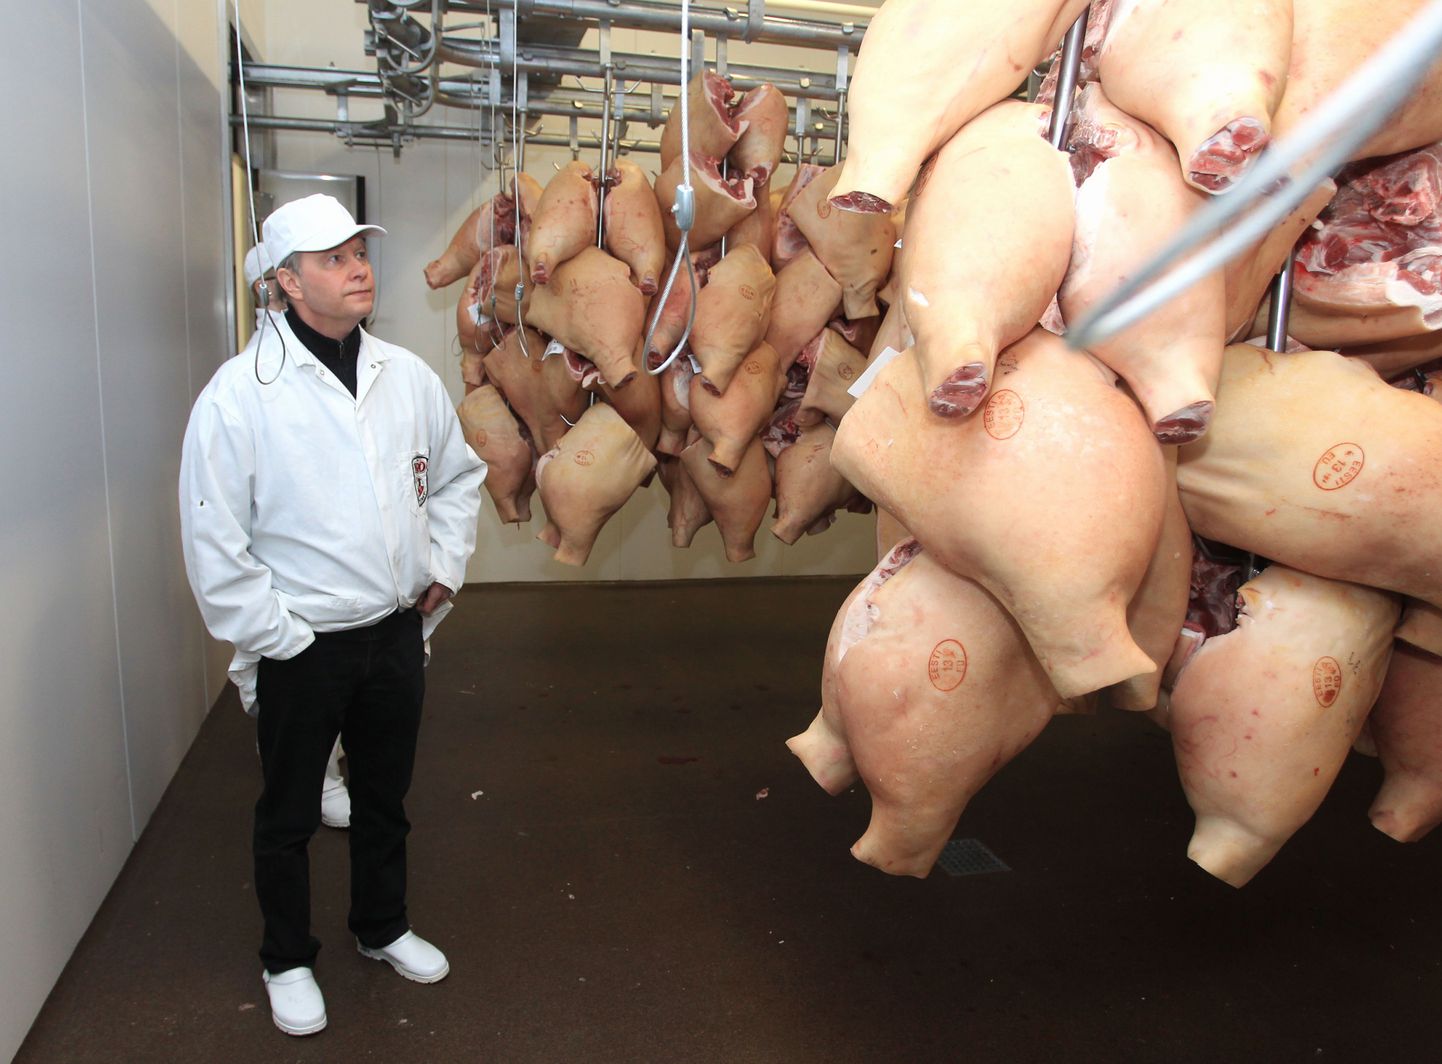 Nõo lihatööstuse juht Toomas Kruustük tunneb aastatega üsna suureks kasvanud tööstuses näo ja nime järgi kõiki töötajaid ning iga nurka. Ka lihalõikustsehhi ees olevas laos võib ta pikalt rääkida, millise süsteemi järgi seal toorainet hoitakse.